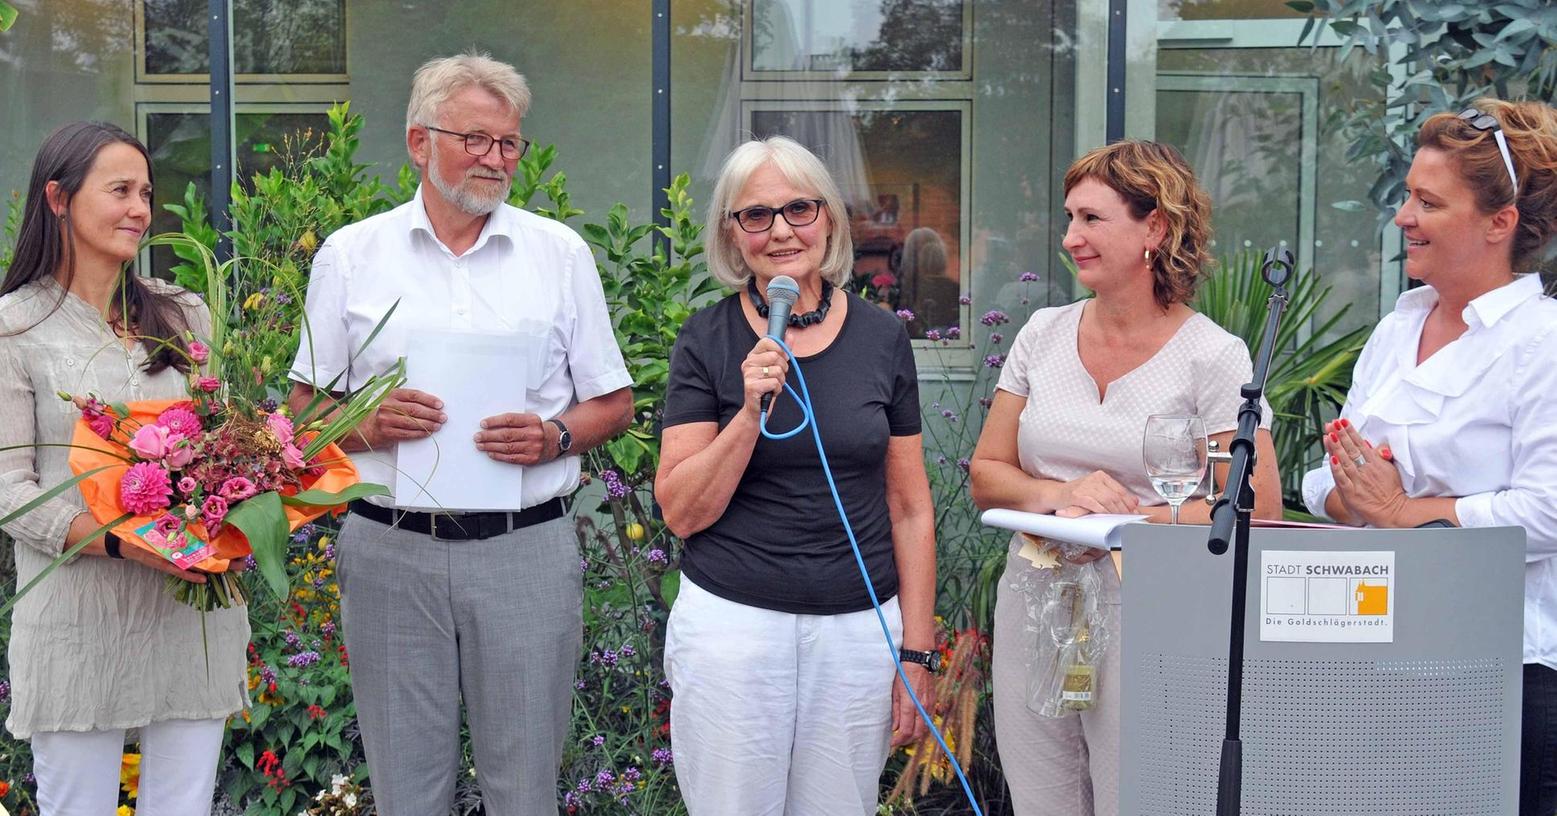 Babette Ueberschär gewinnnt Publikumspreis der „ortung IX“